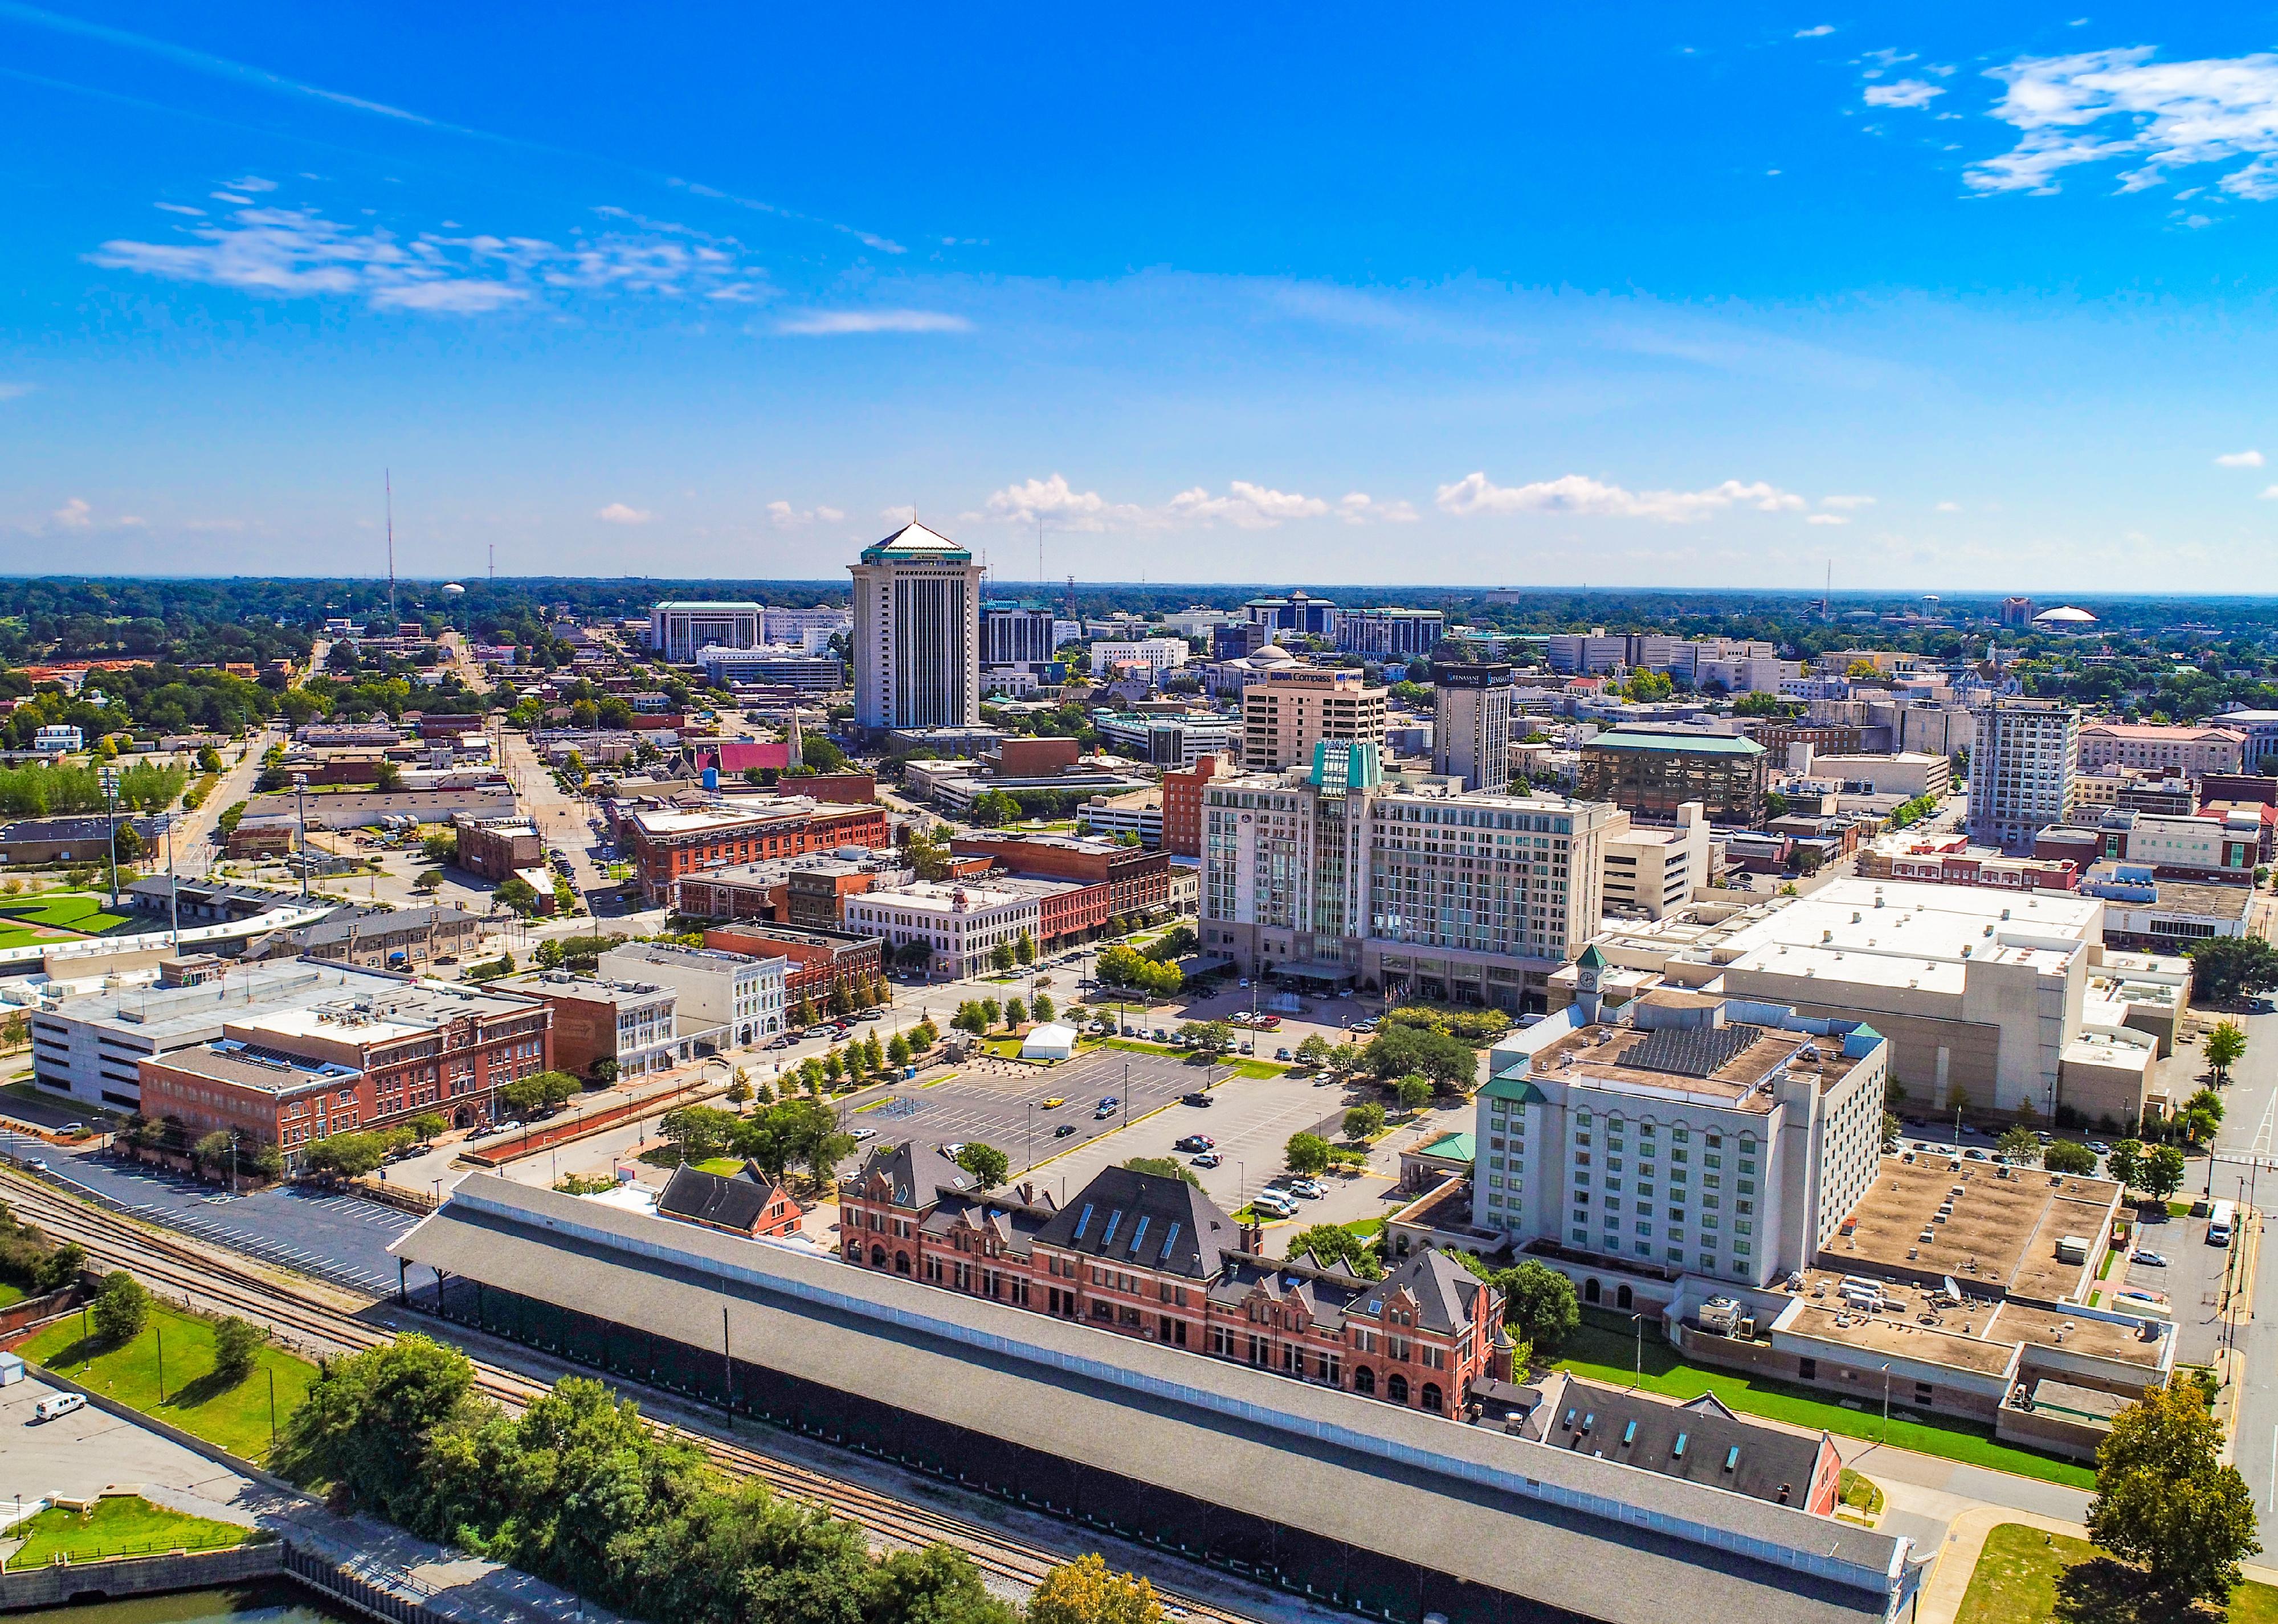 Downtown Montgomery, Alabama skyline.